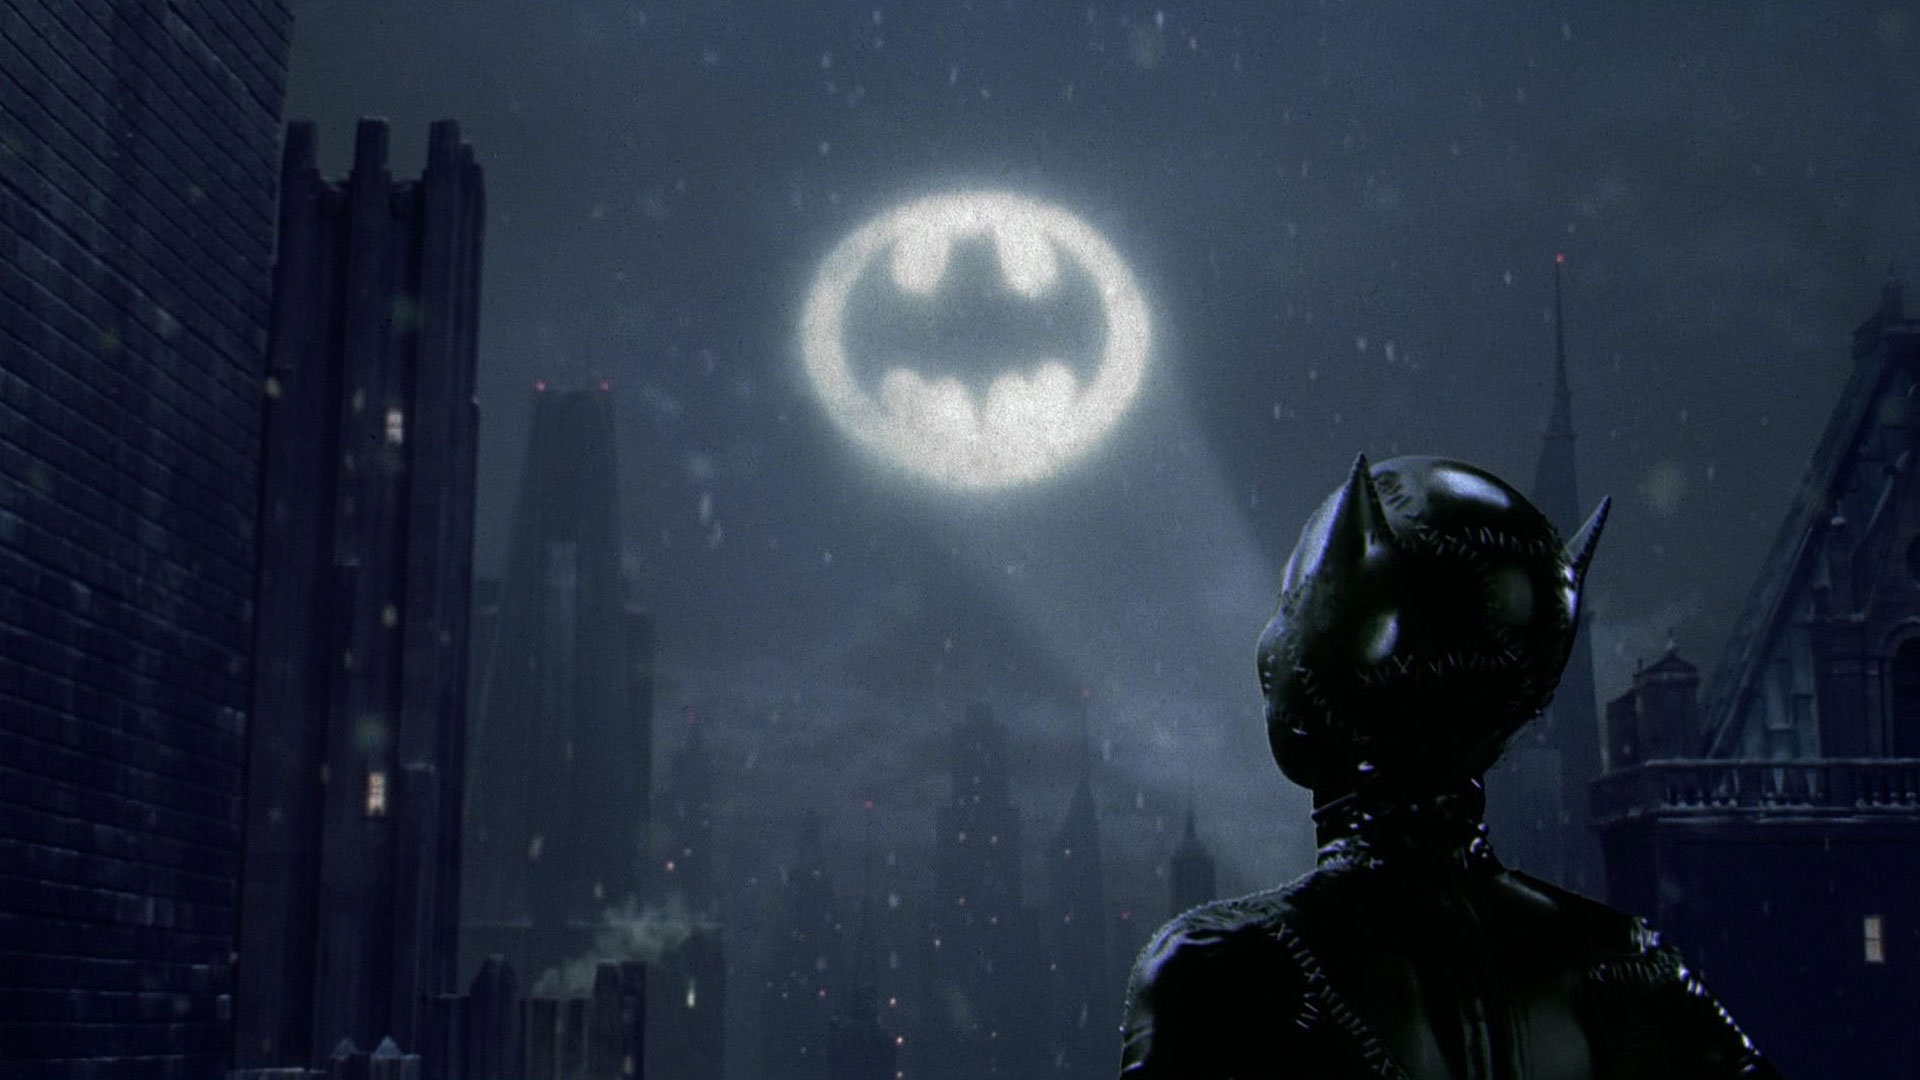 Fondos de pantalla de Batman Vuelve para escritorio, descarga gratis  imágenes y fondos de Batman Vuelve para PC 